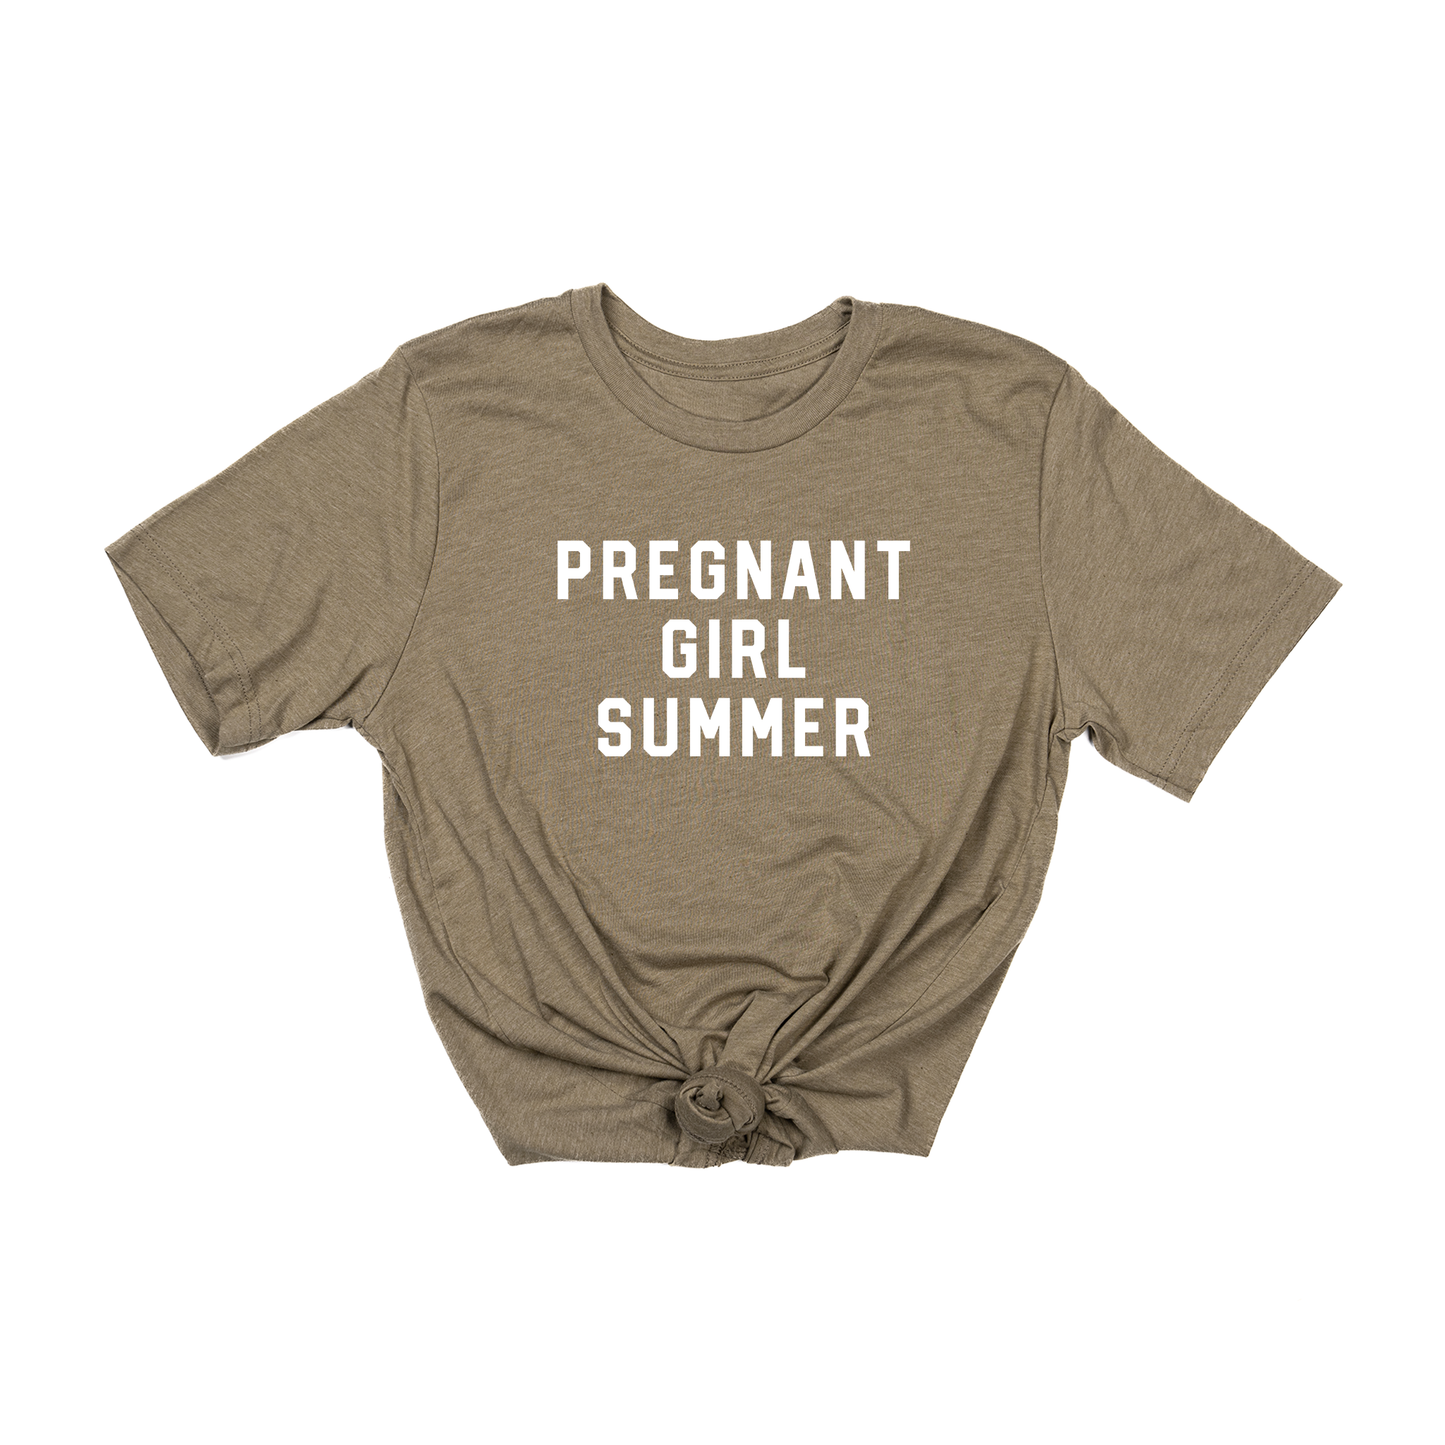 Pregnant Girl Summer (White) - Tee (Olive)